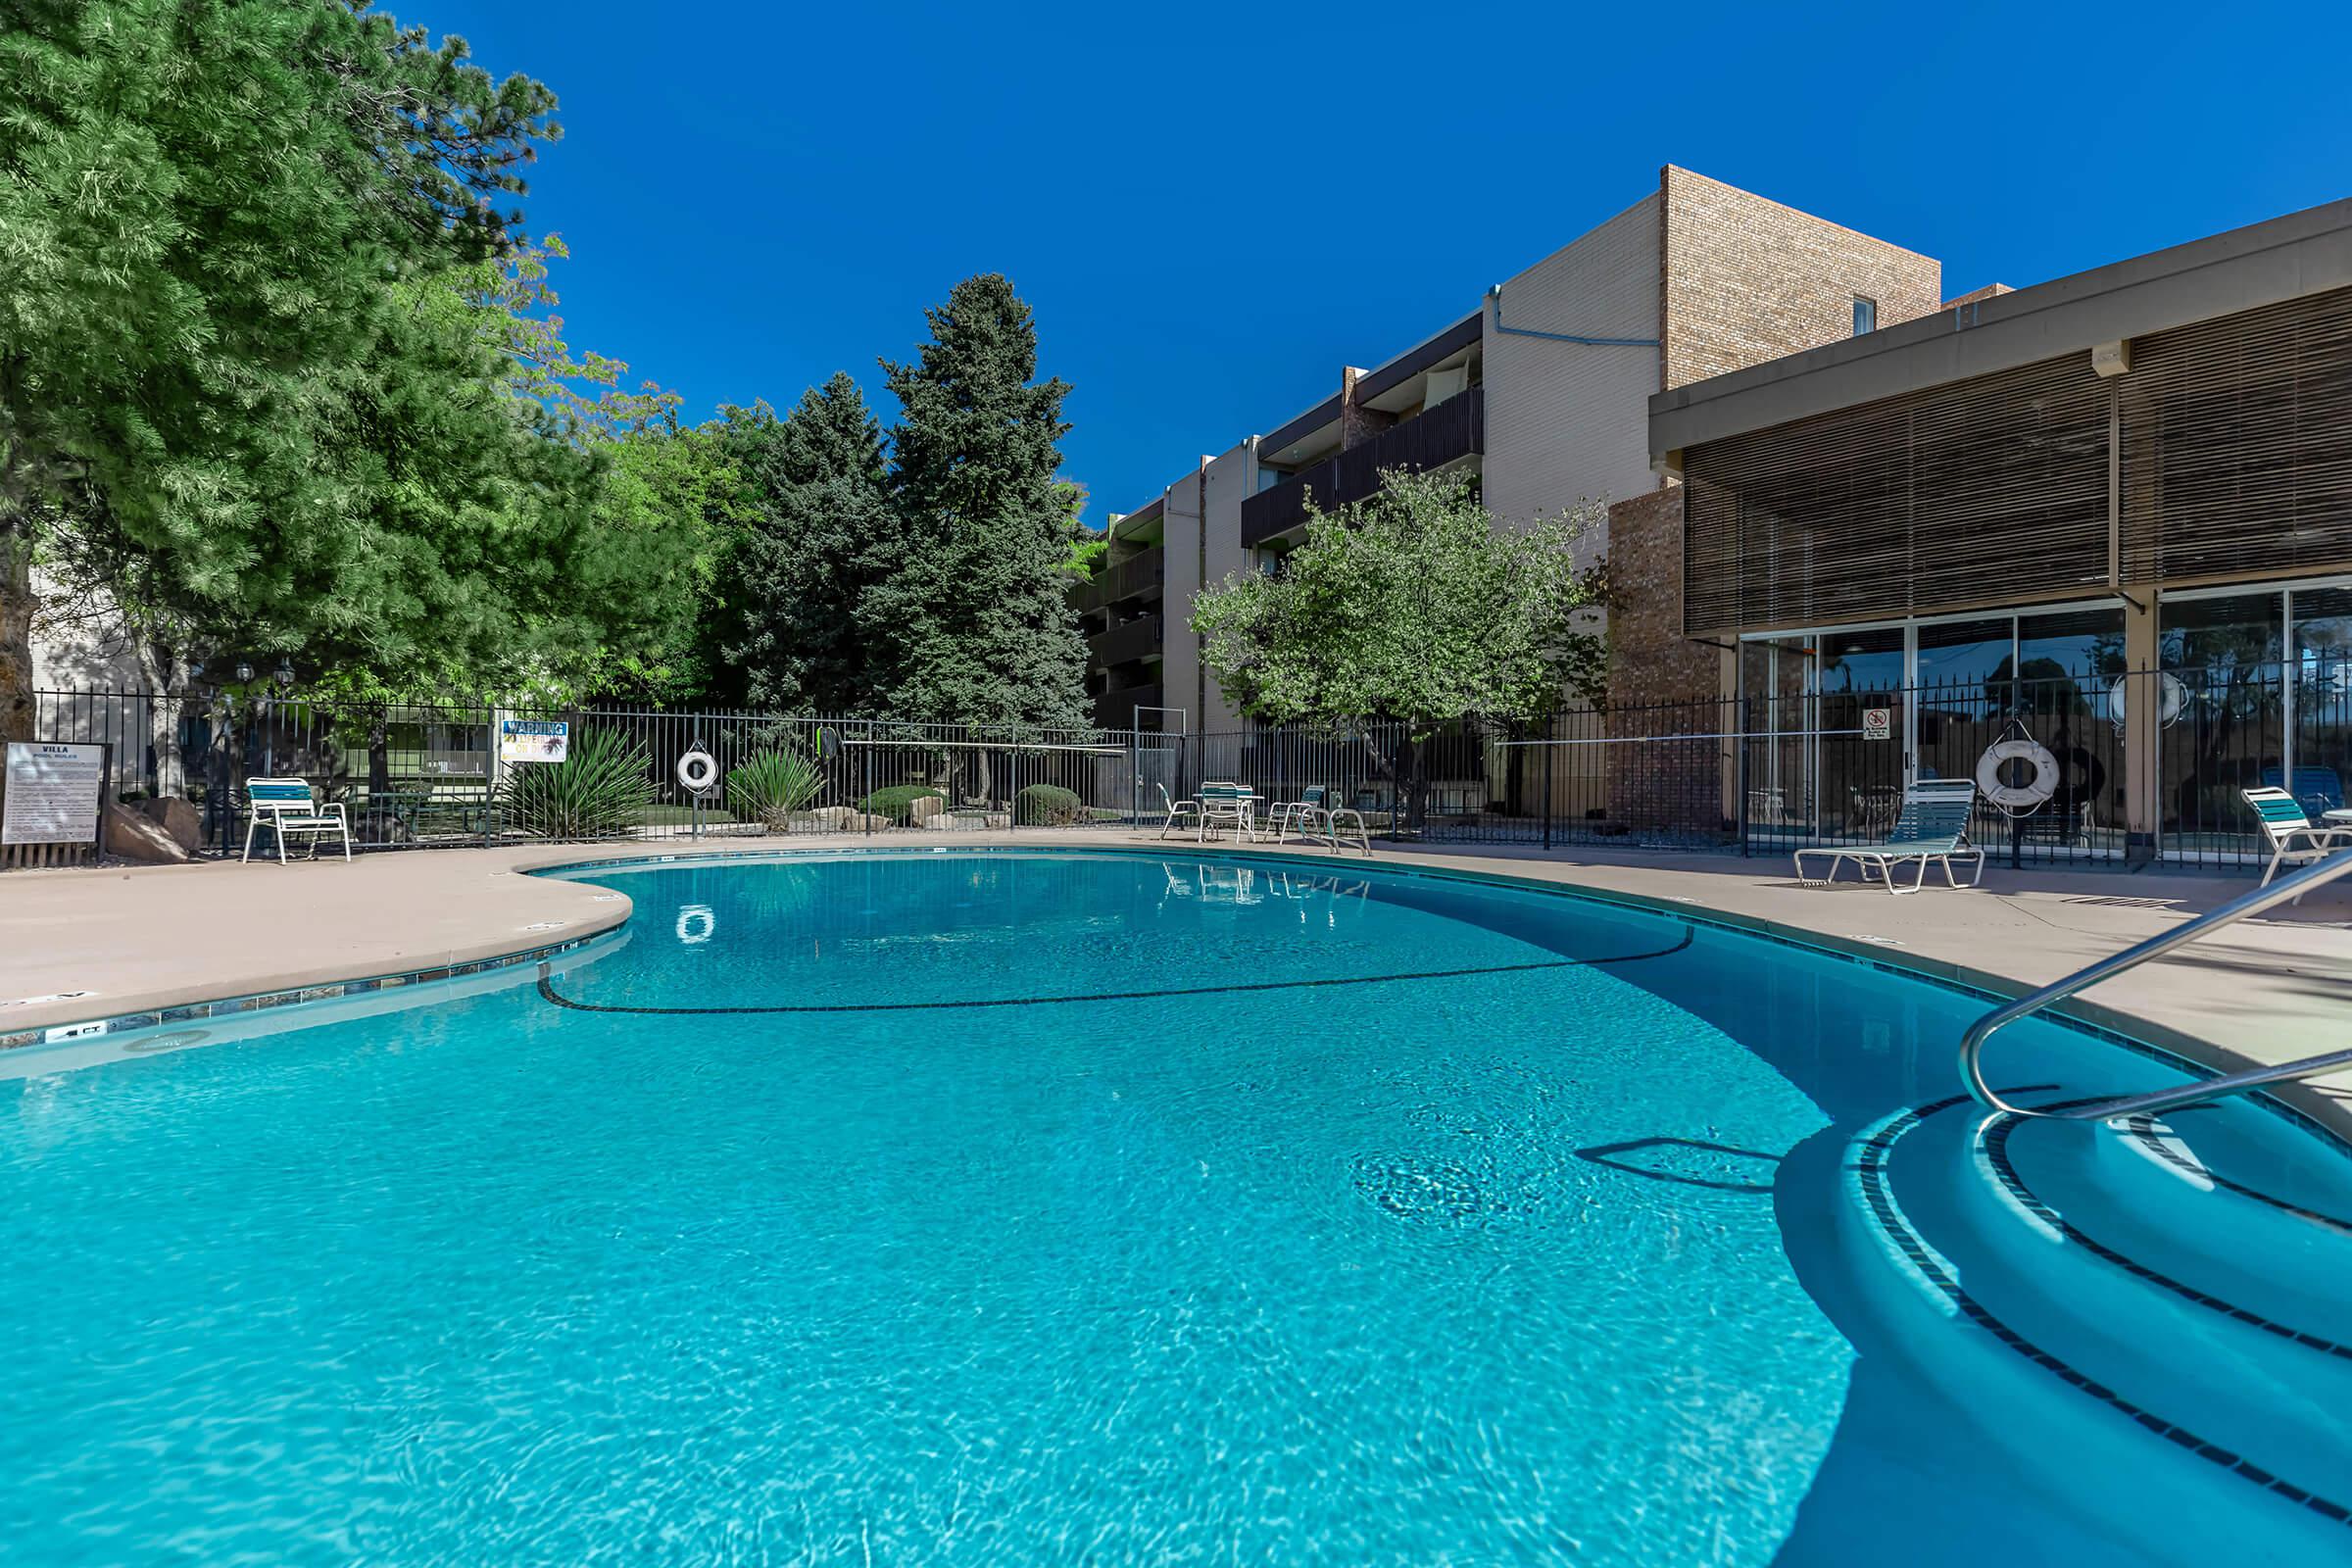 Villa Apartments community pool